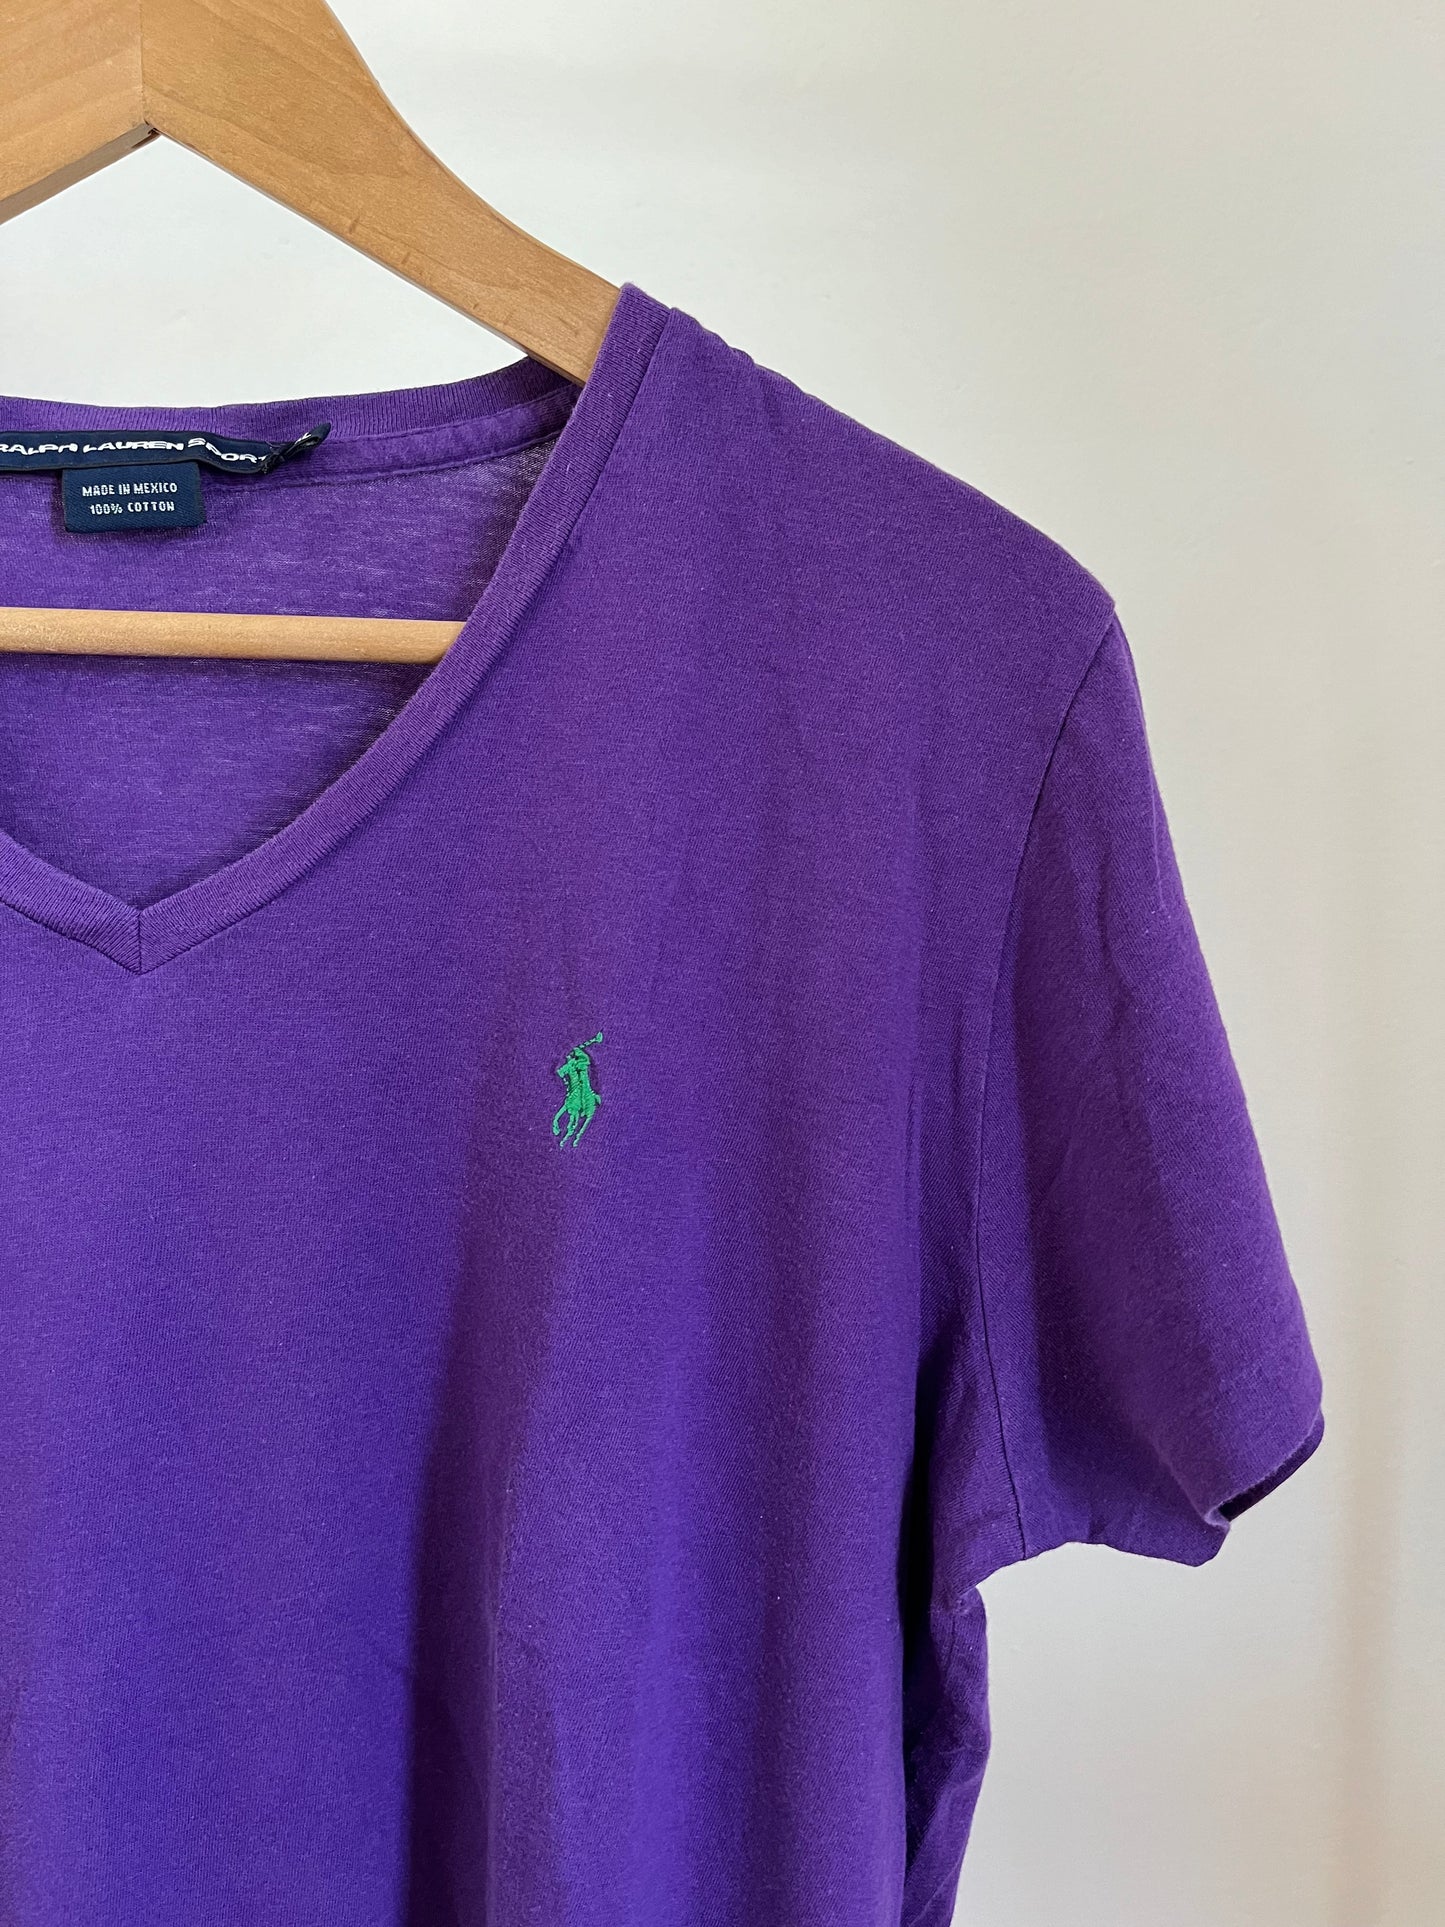 T-Shirt Ralph Lauren viola taglia XL